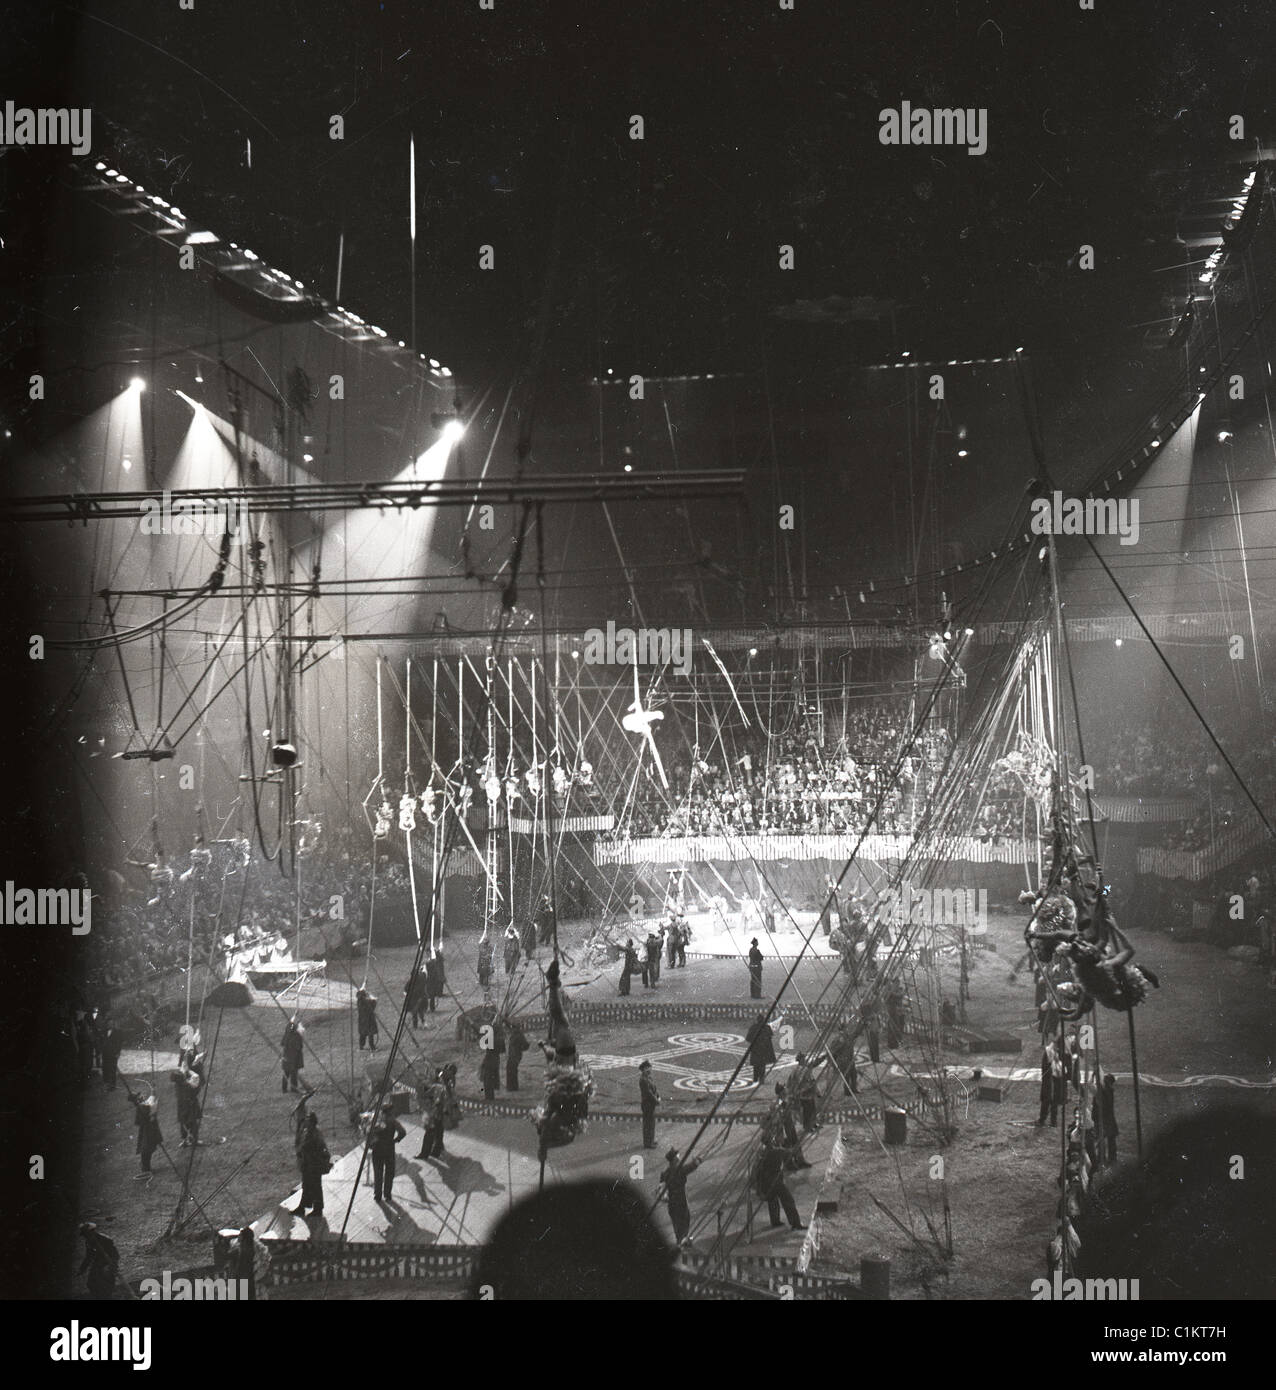 Les artistes de cirque en noir et blanc à l'intérieur d'énormes arena tente big top Banque D'Images